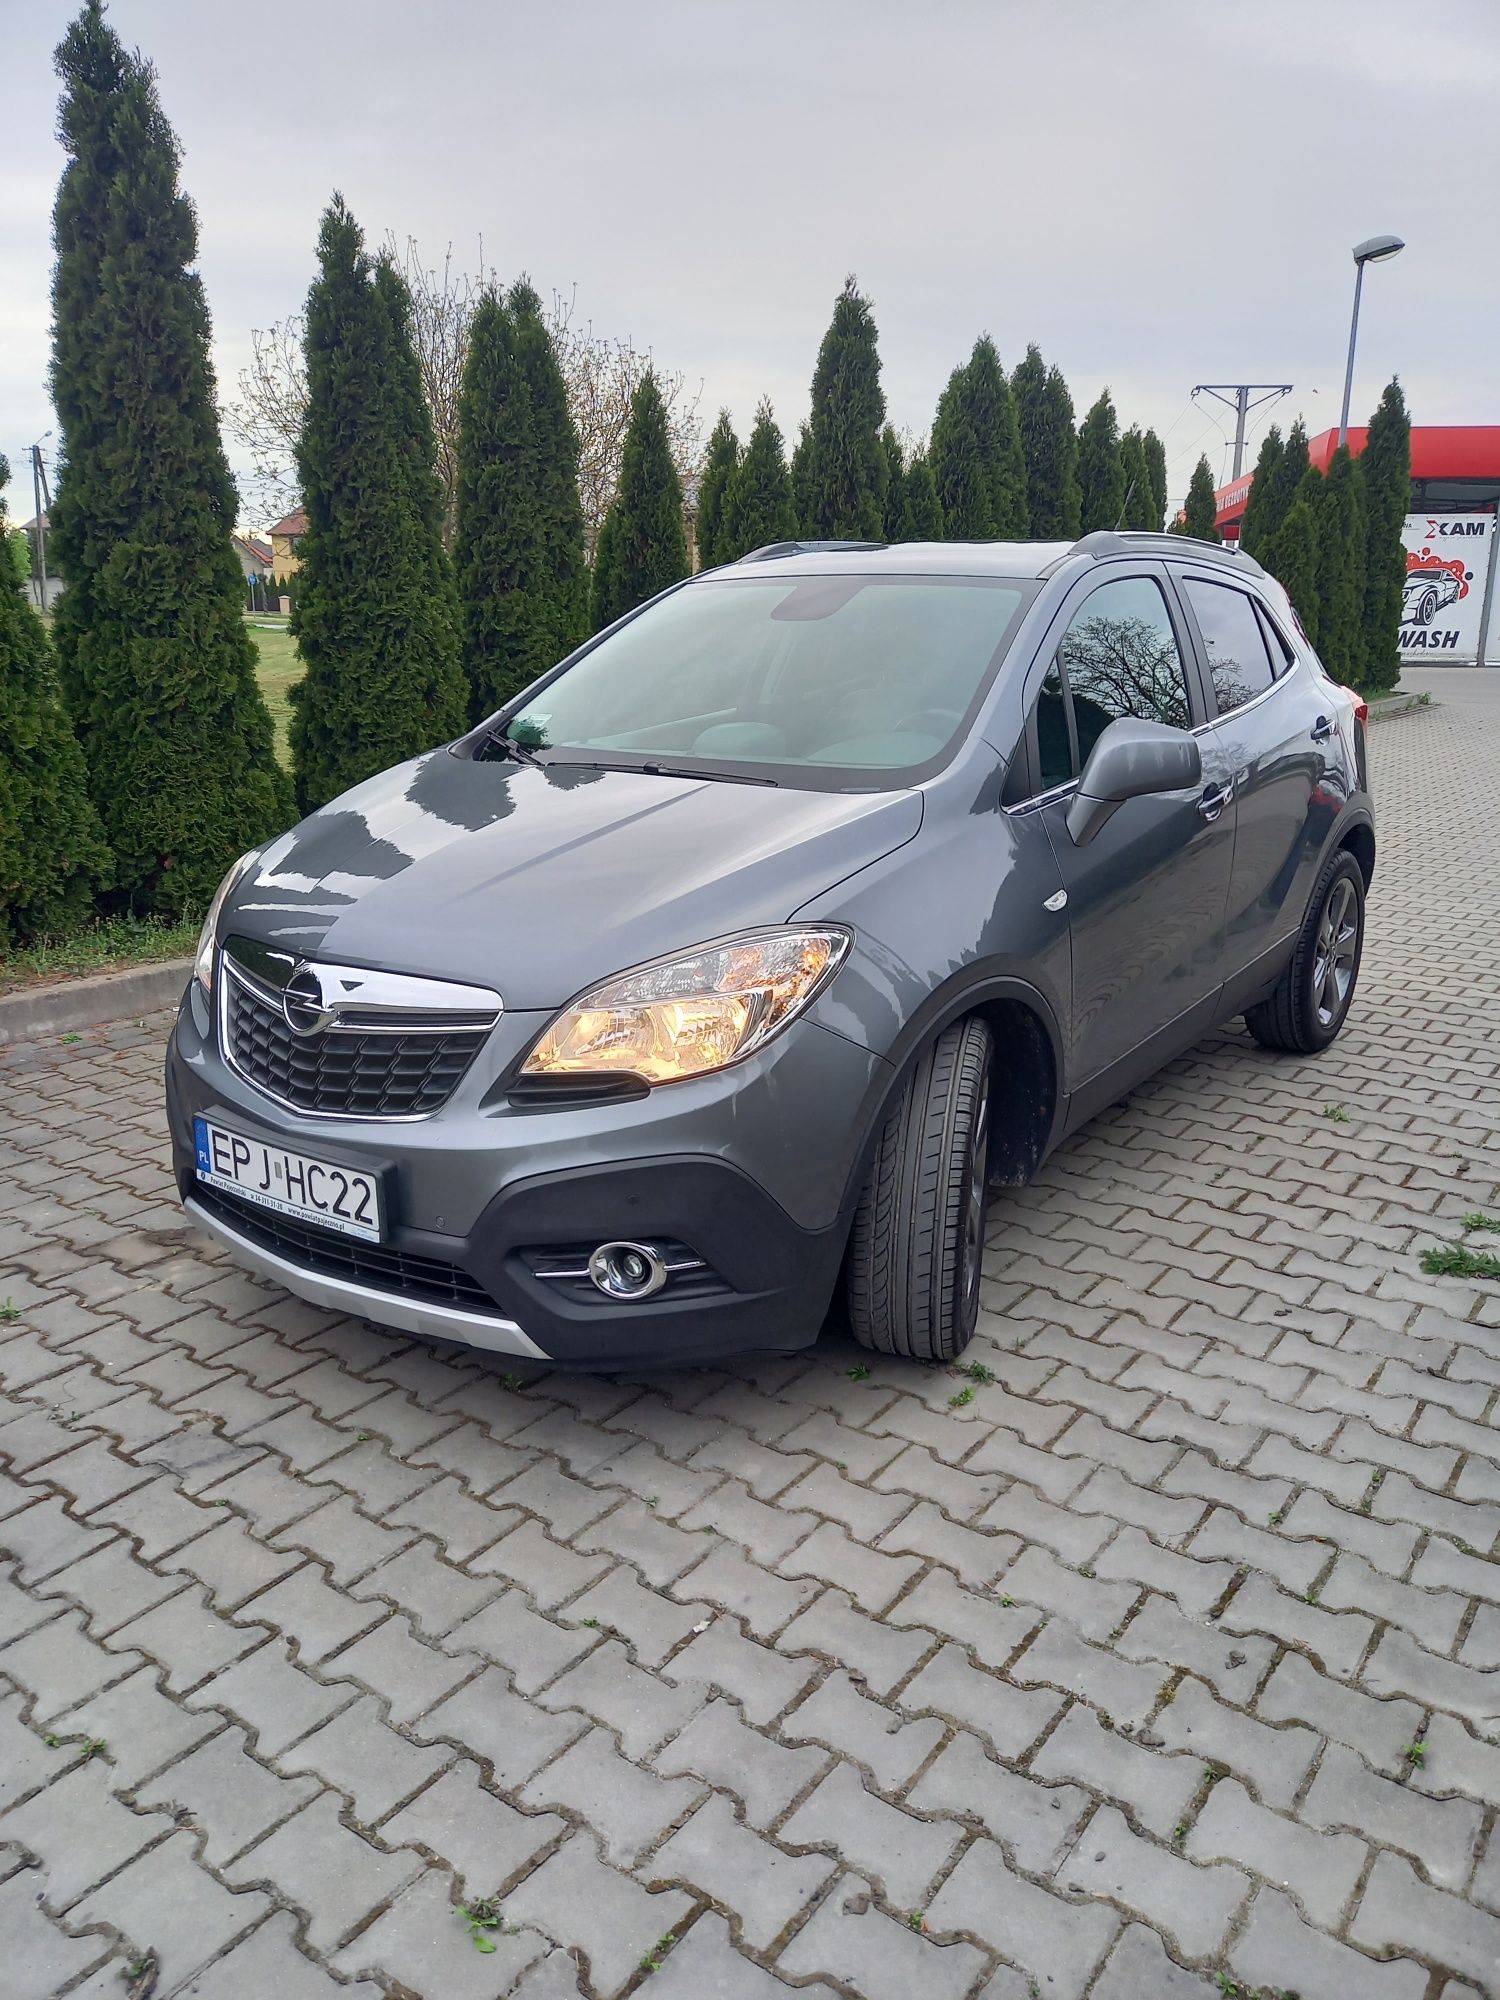 Opel mokka 1.7cdti.